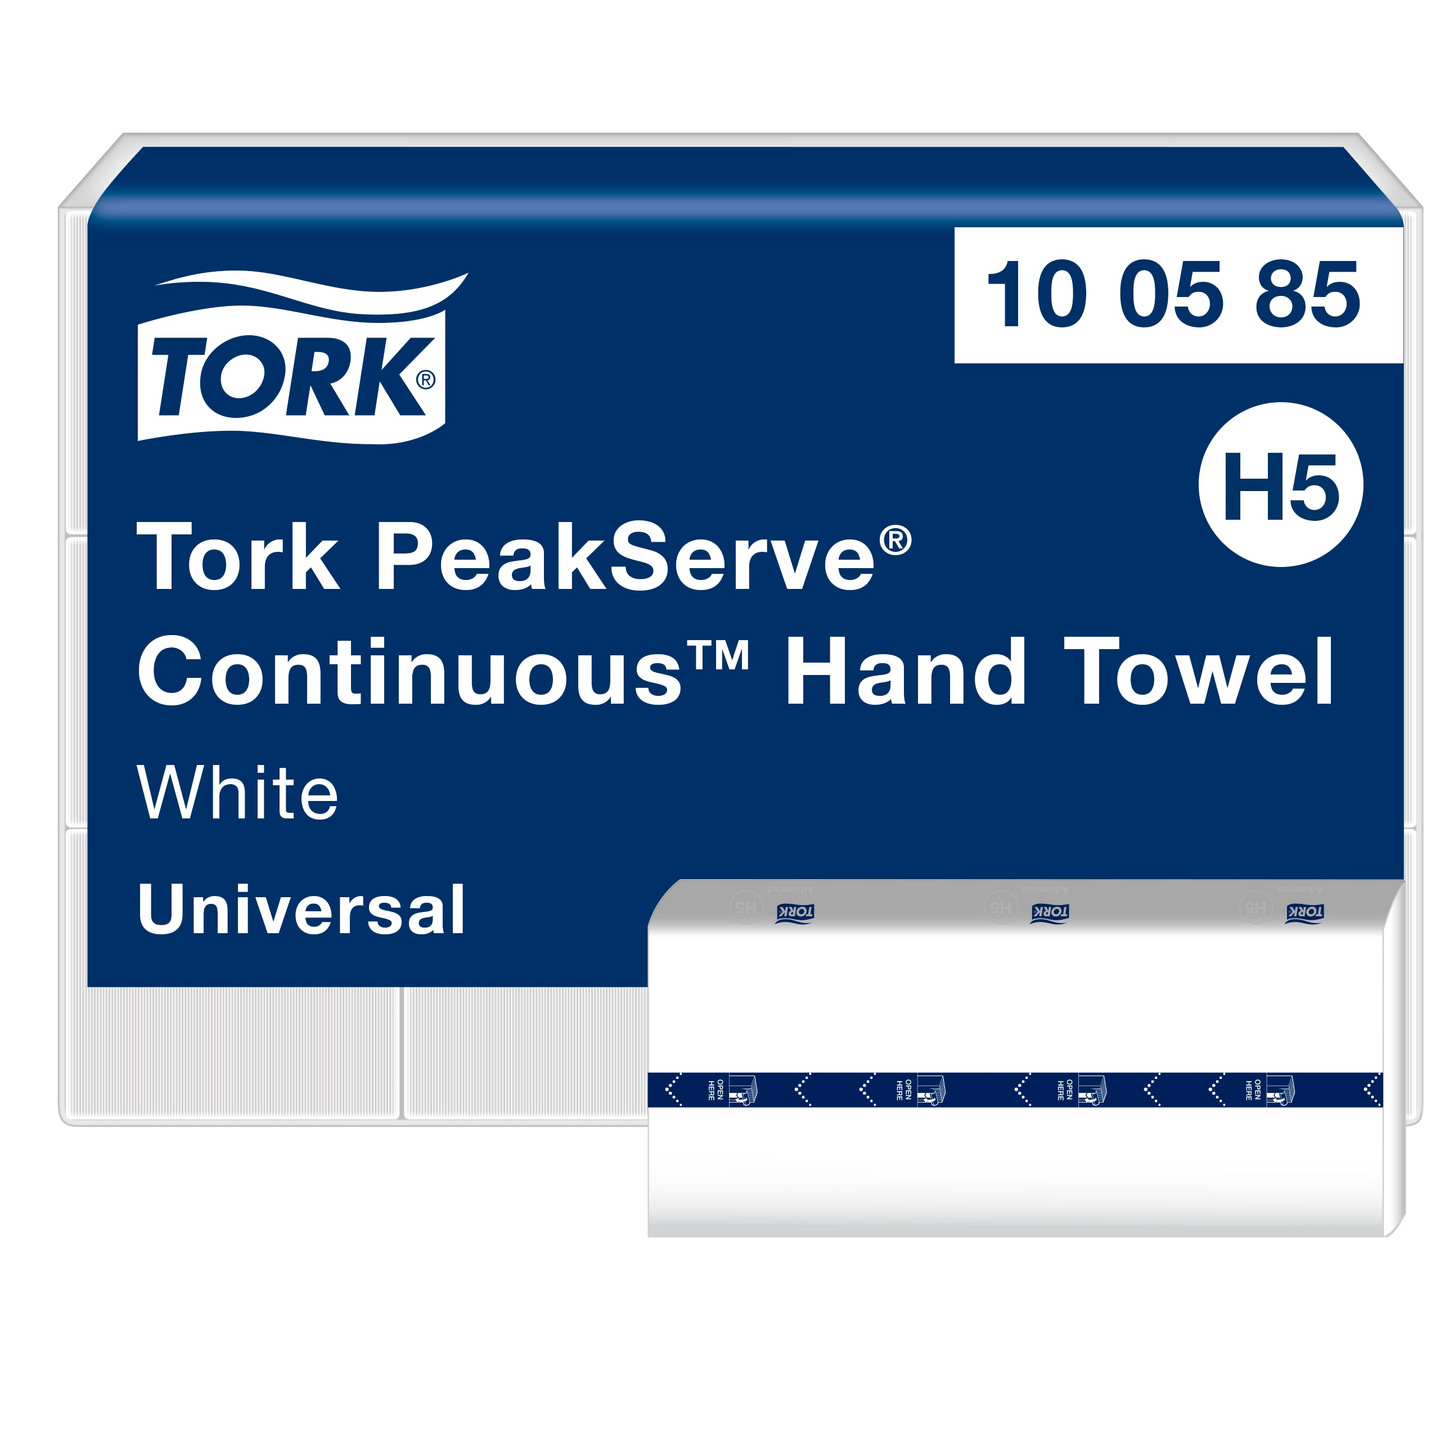 Tork PeakServe Continuous käsipyyhe valkoinen 12x410 arkkia Universal H5